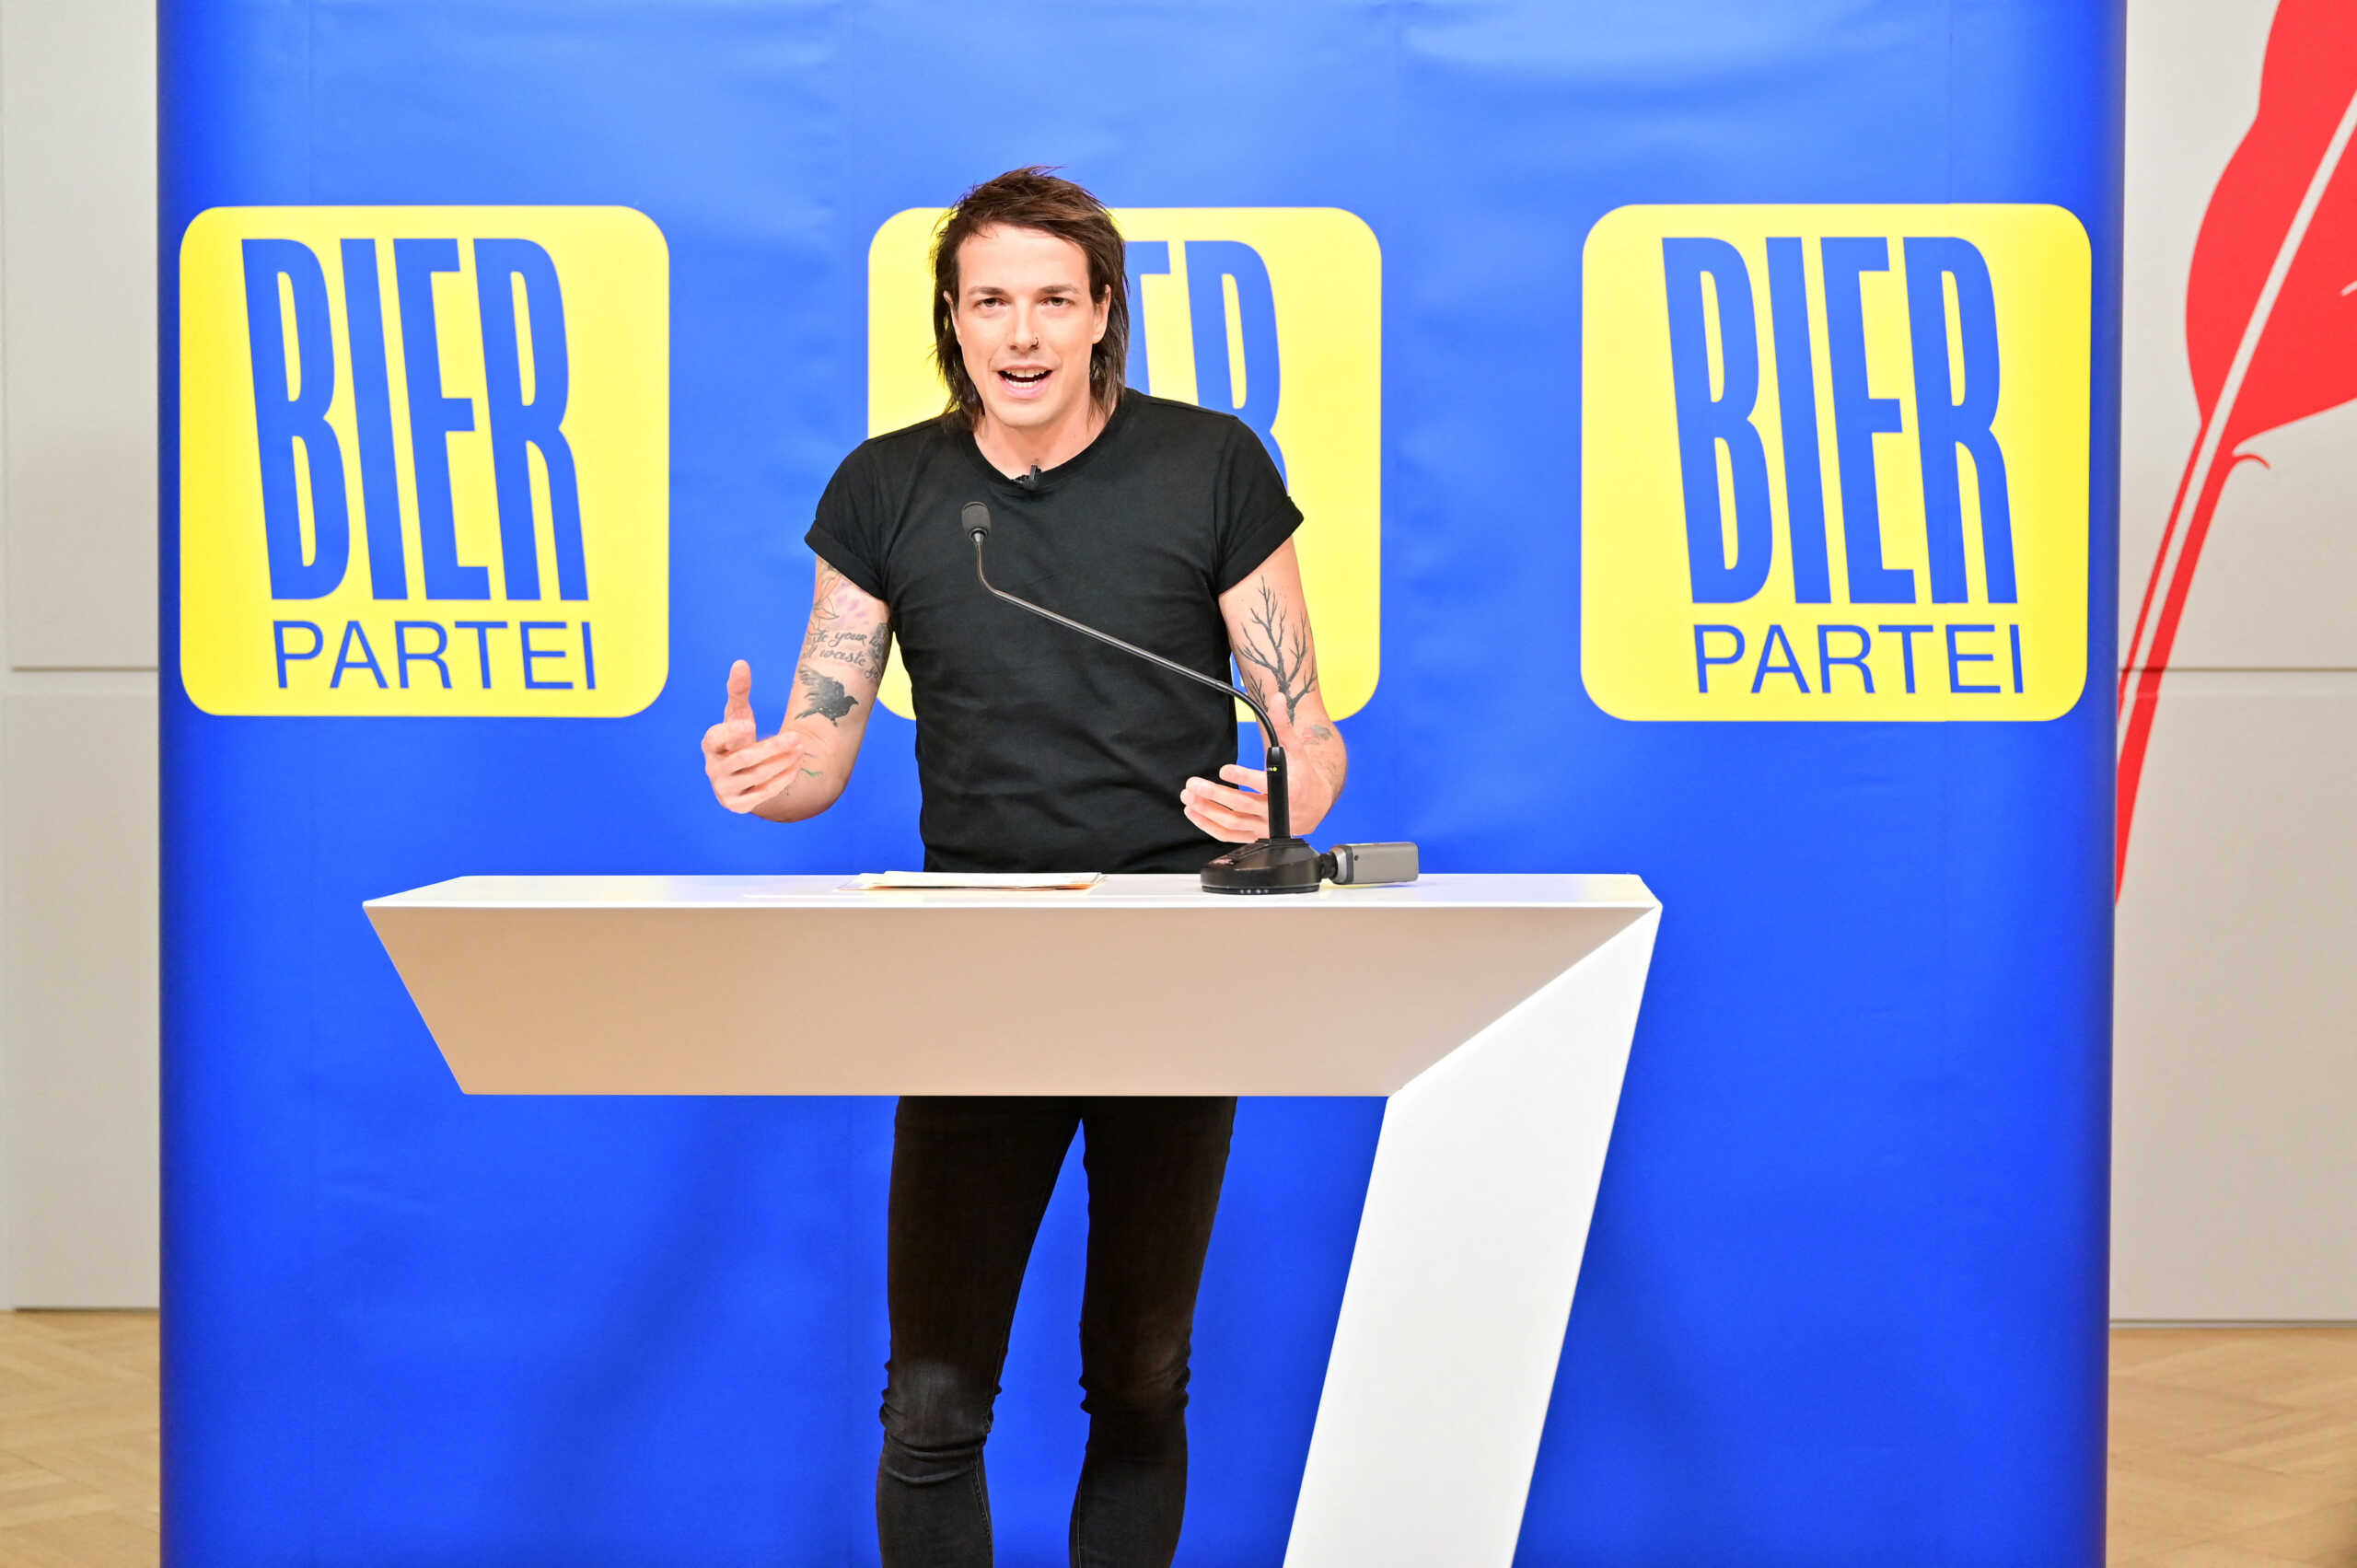 Αυστρία: Το Κόμμα της Μπύρας κατεβαίνει στις εκλογές και βλέπει το ποτήρι μισογεμάτο